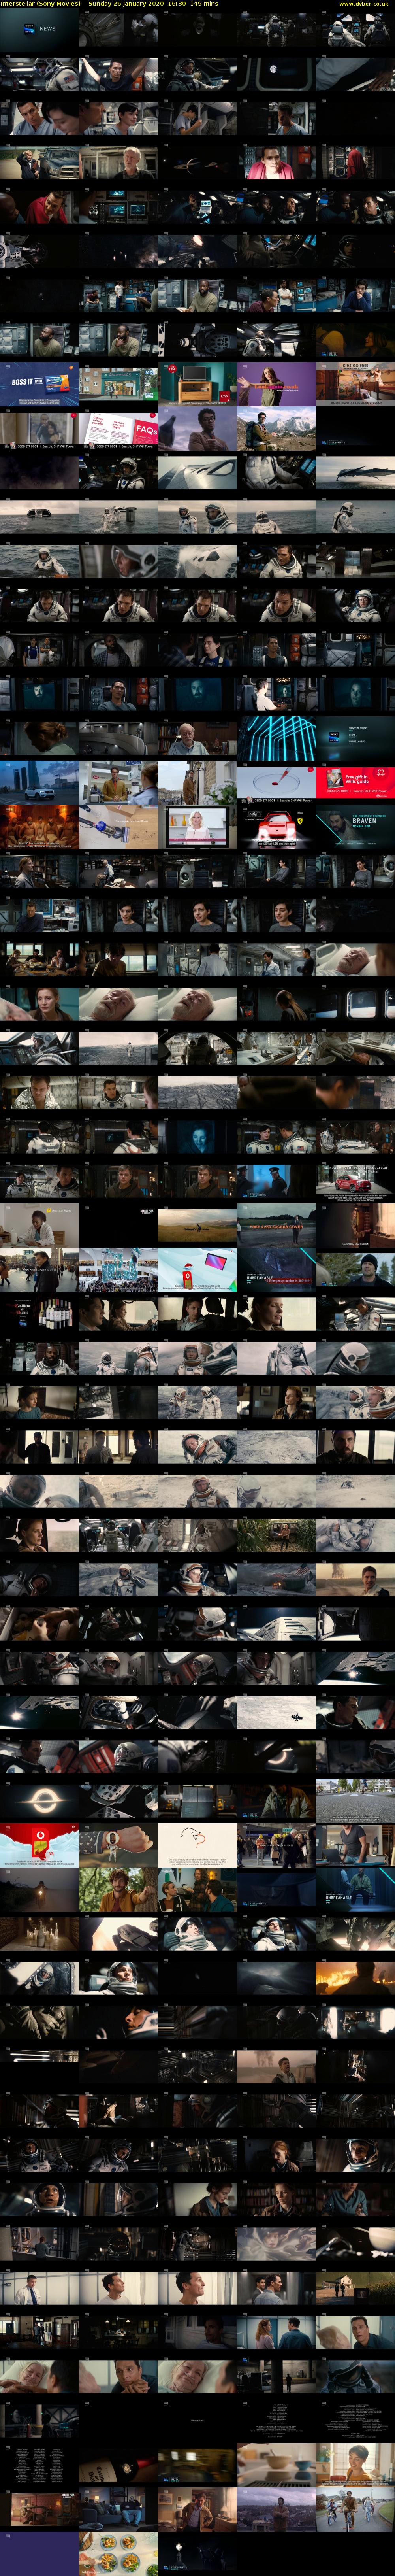 Interstellar (Sony Movies) Sunday 26 January 2020 16:30 - 18:55